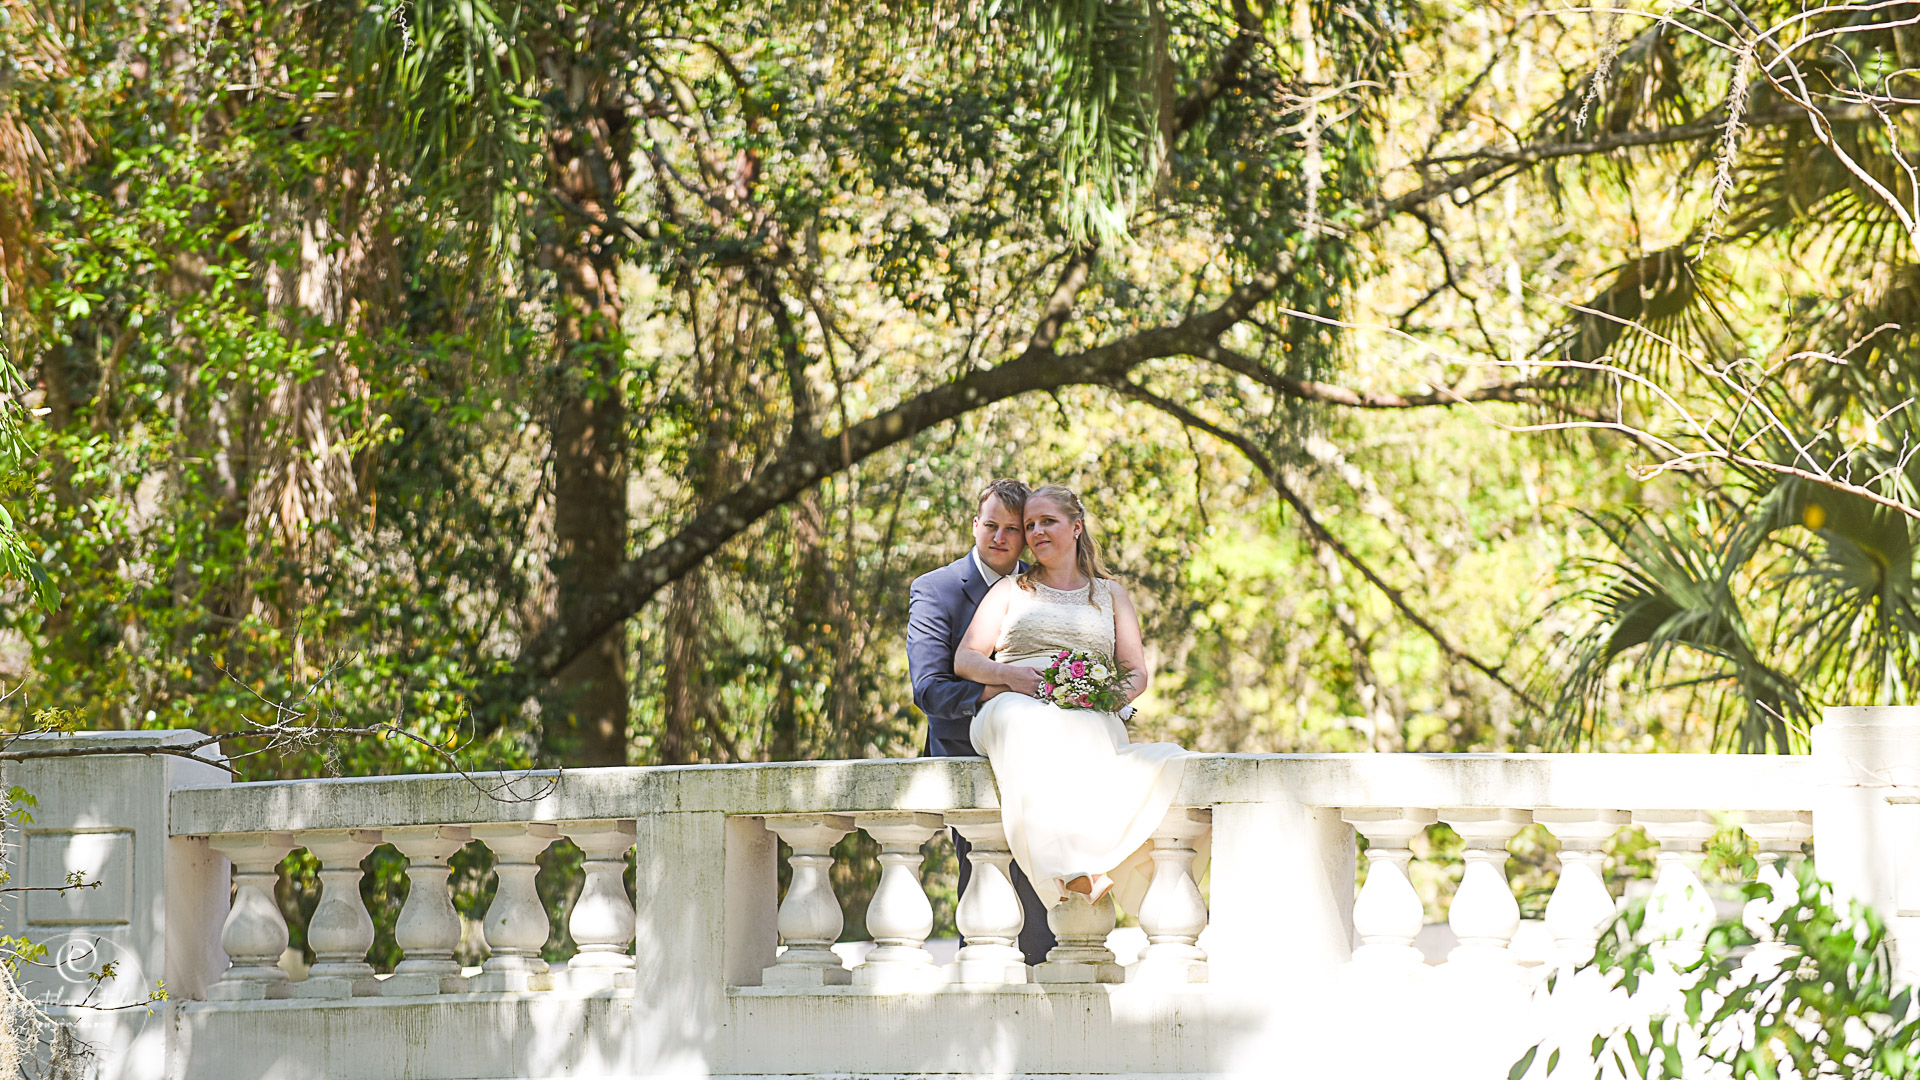 Boda en Parque Orlando, foto de los recién casados ​​en el jardín de Orlando